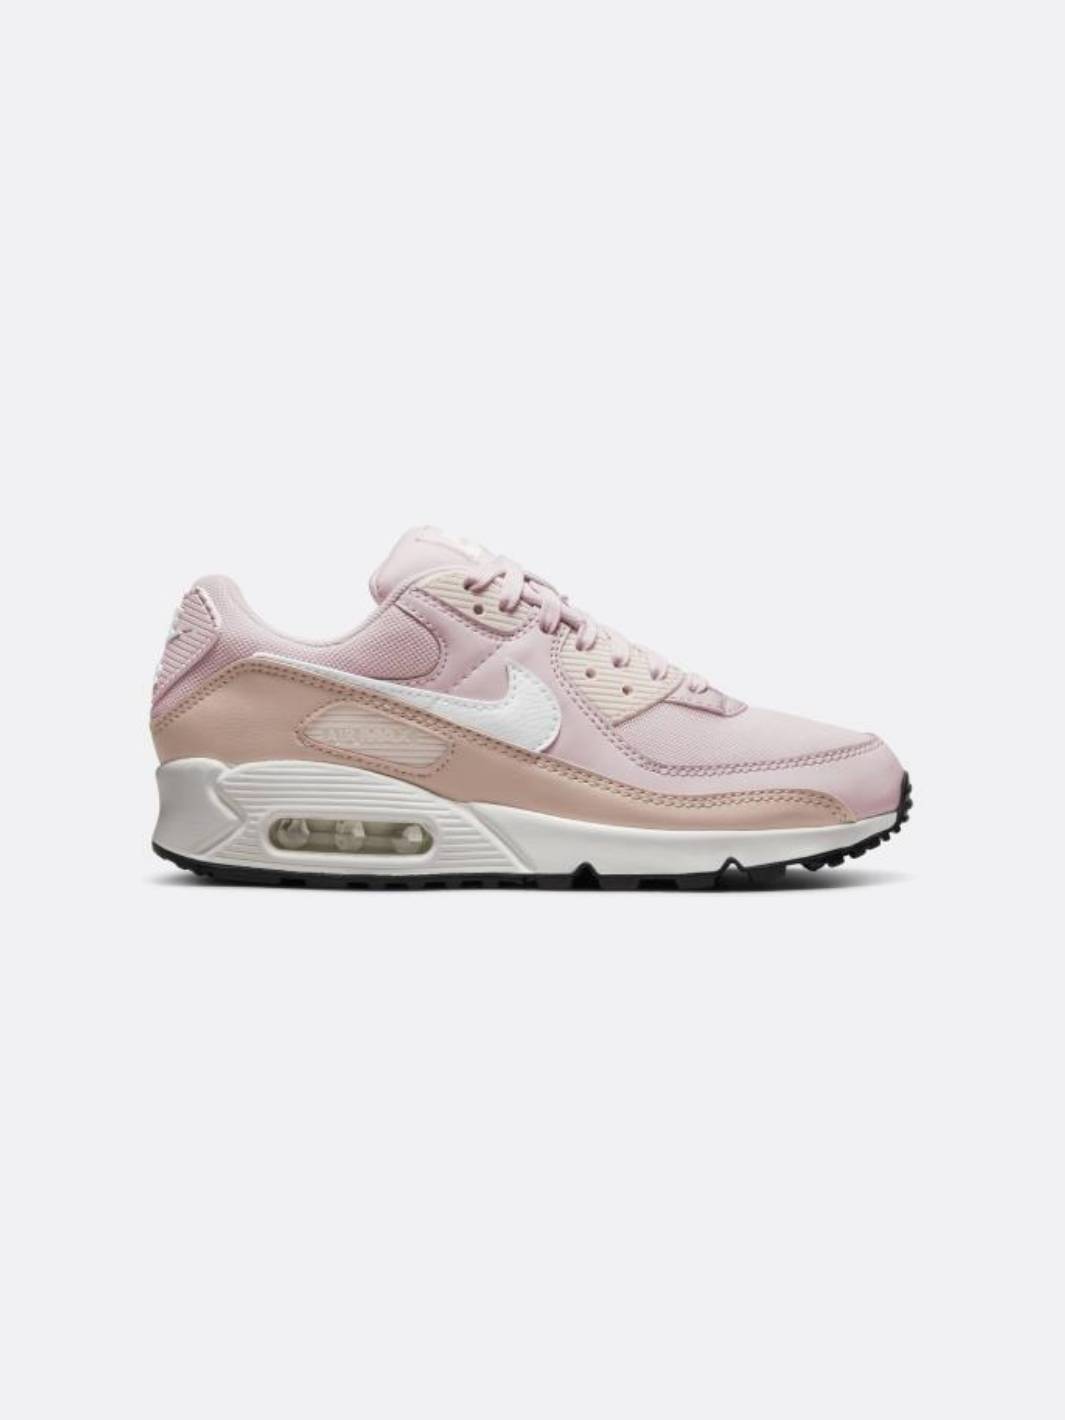 Nike - Women - Air 90 - Rose/White/Pink -